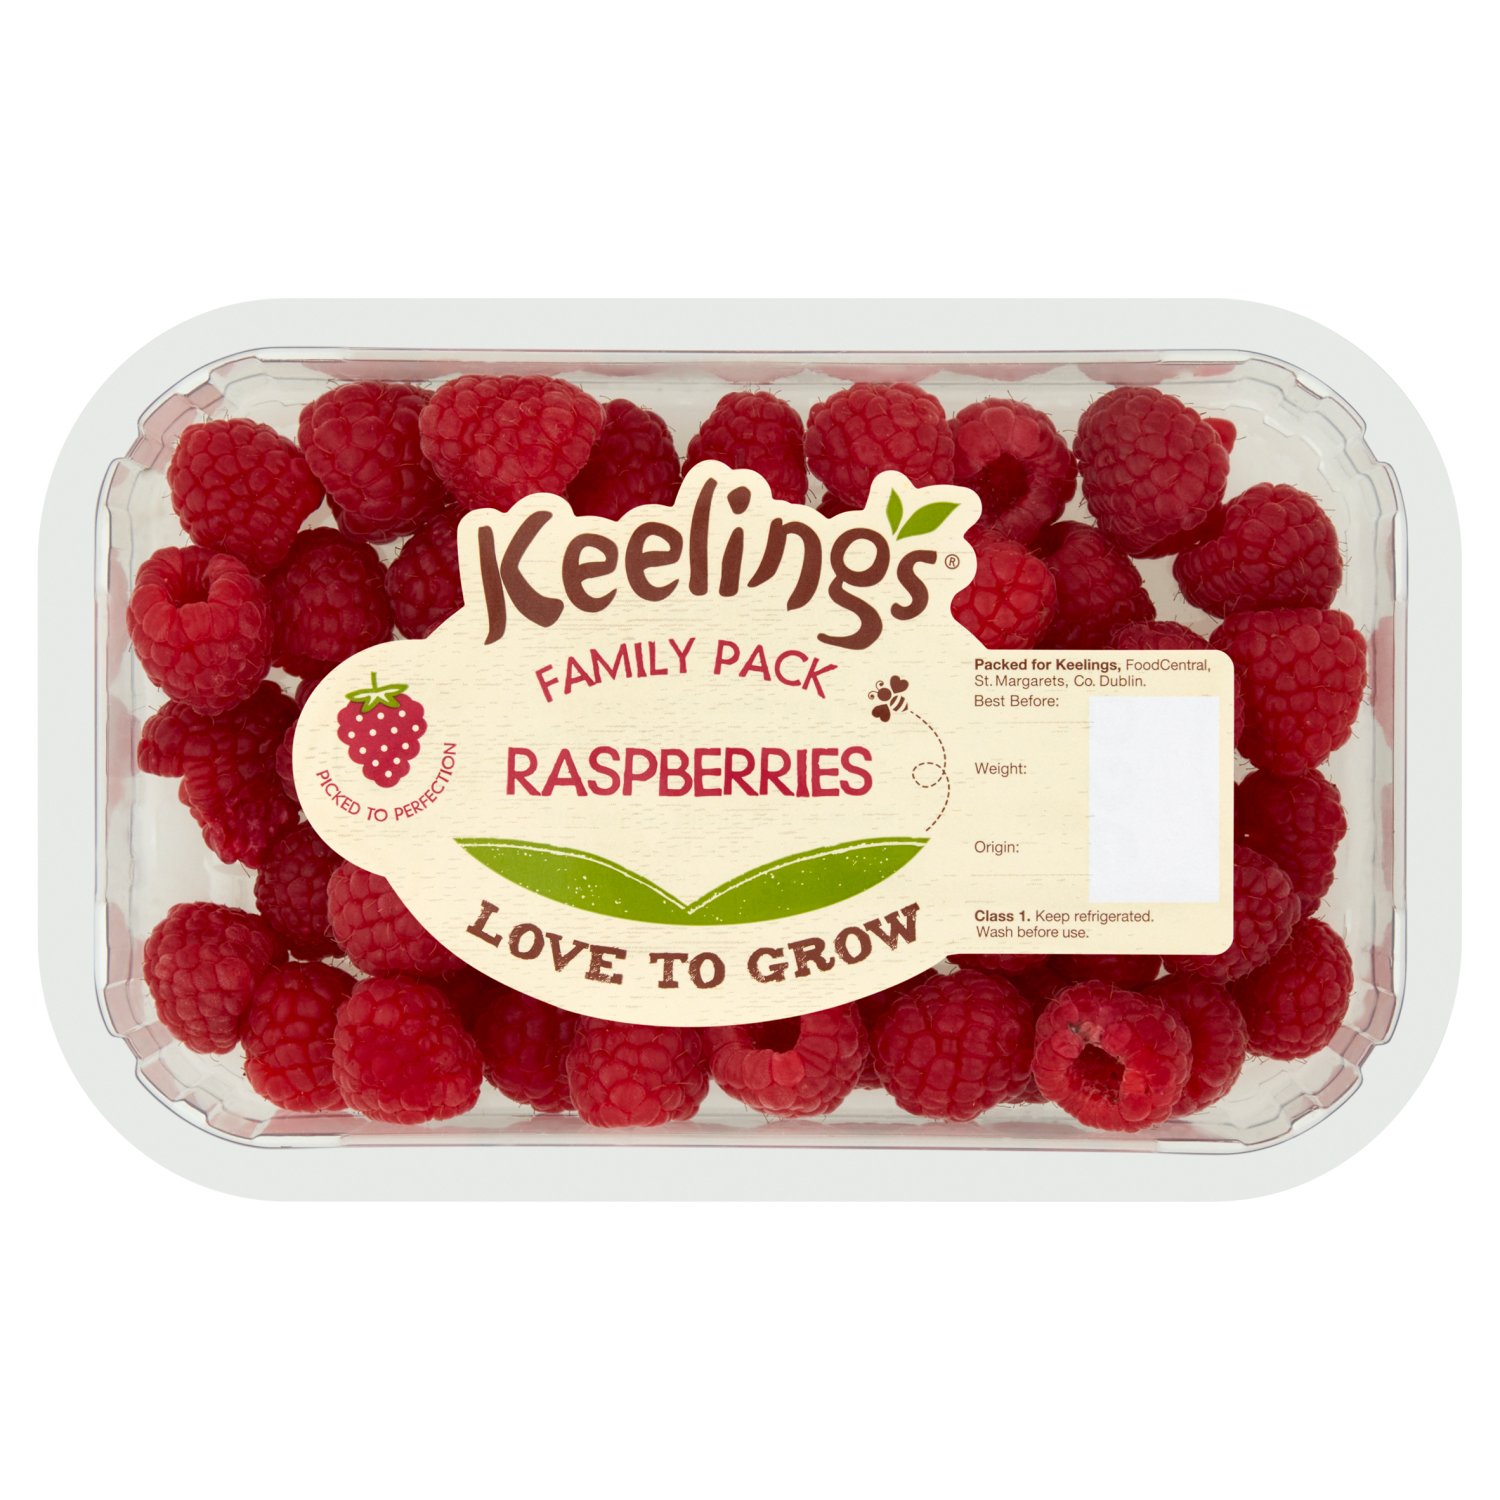 Keelings Raspberries Family Pack (200 g)